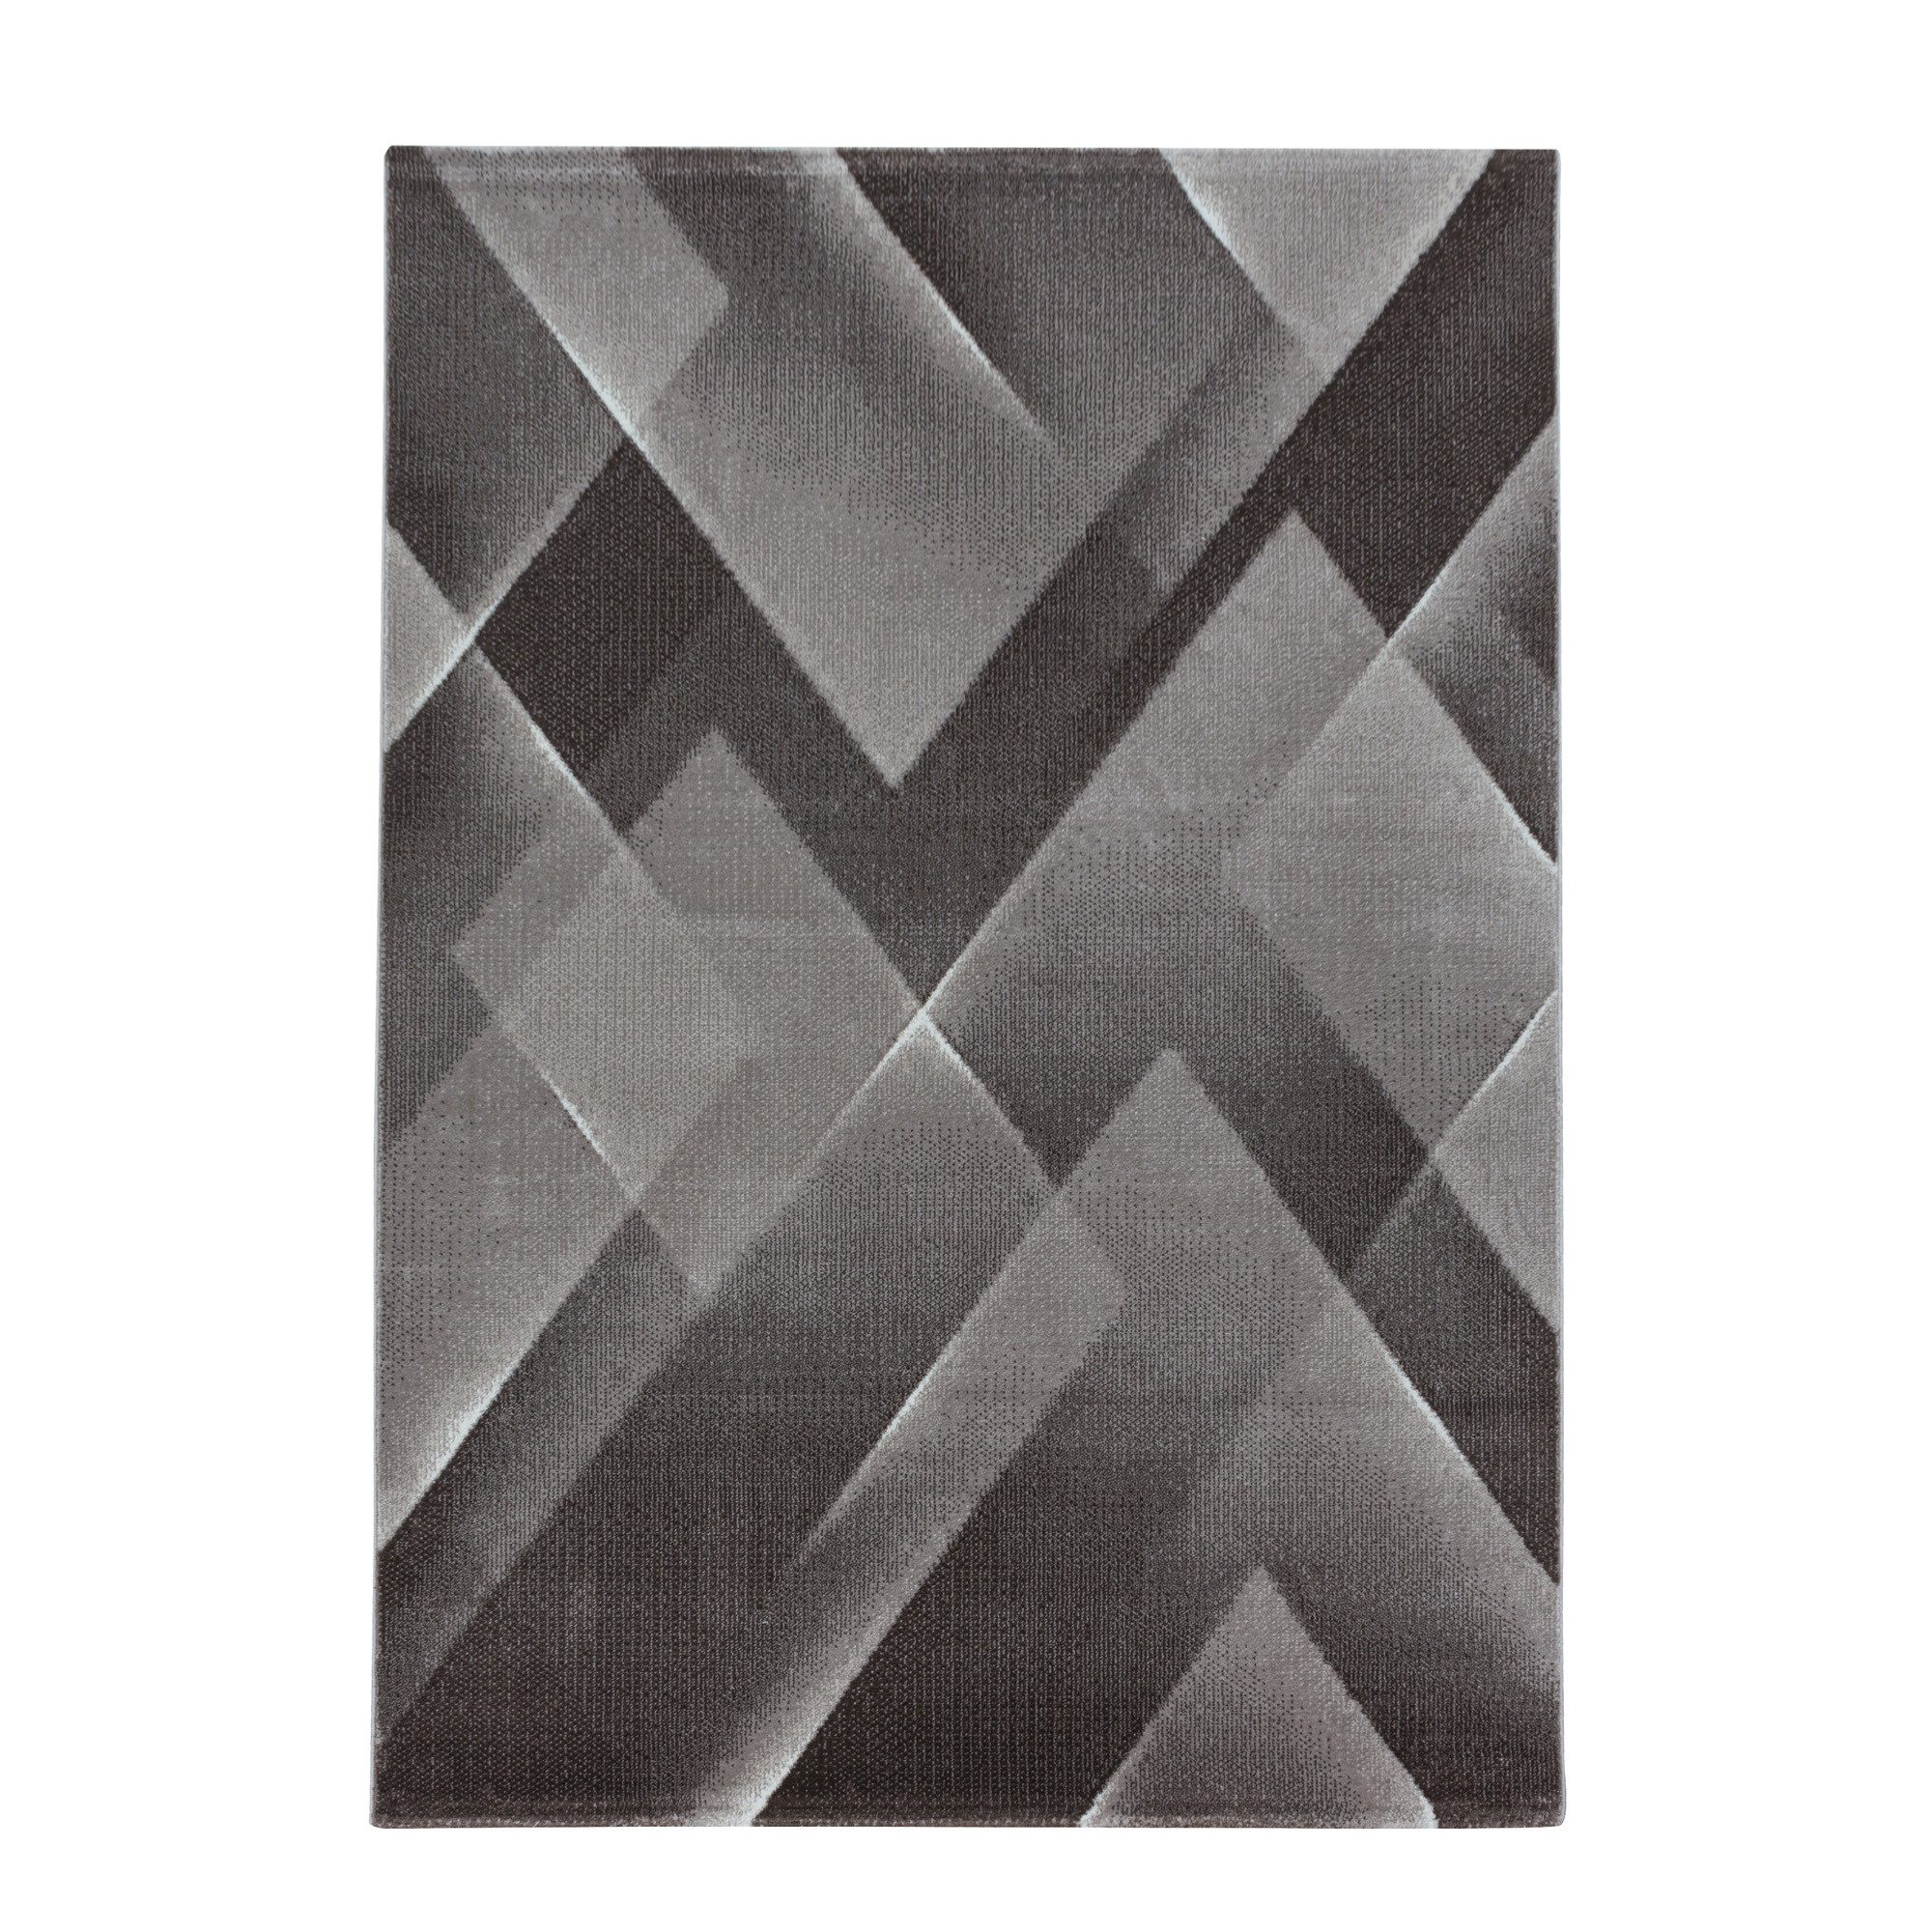 Teppich Abstrakt Design, Teppium, Rechteckig, Höhe: 9 mm, Kurzflor Teppich Abstrakt Design Teppich Braun Teppich Wohnzimmer